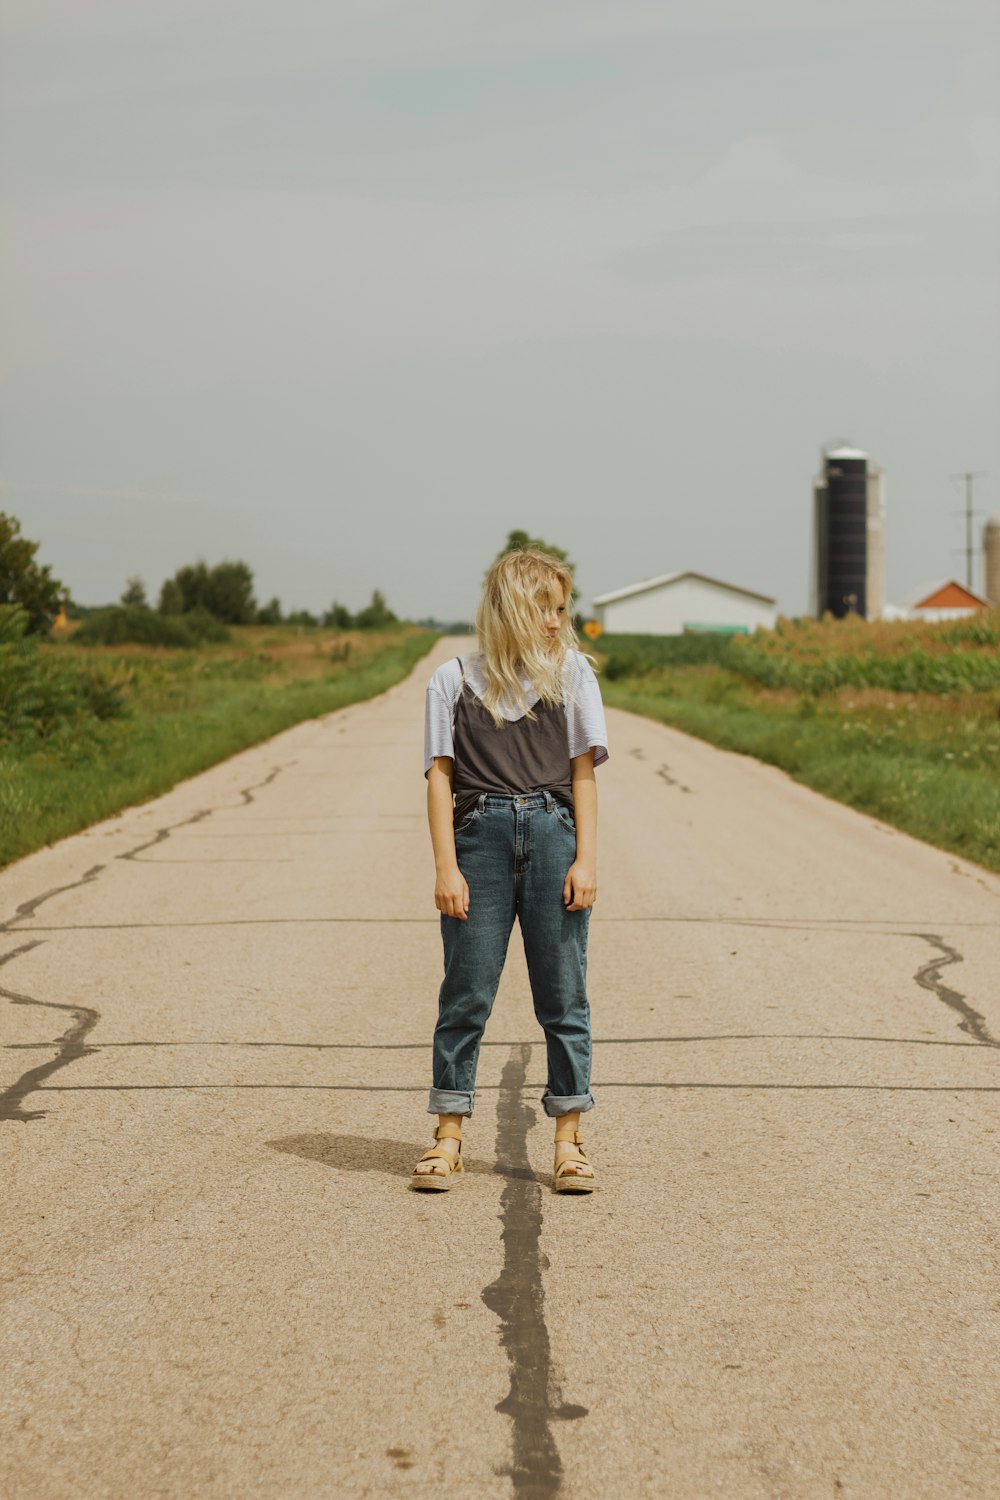 흰색 티셔츠와 파란색 데님 청바지를 입은 여자가 낮에 회색 콘크리트 도로를 걷고 있다